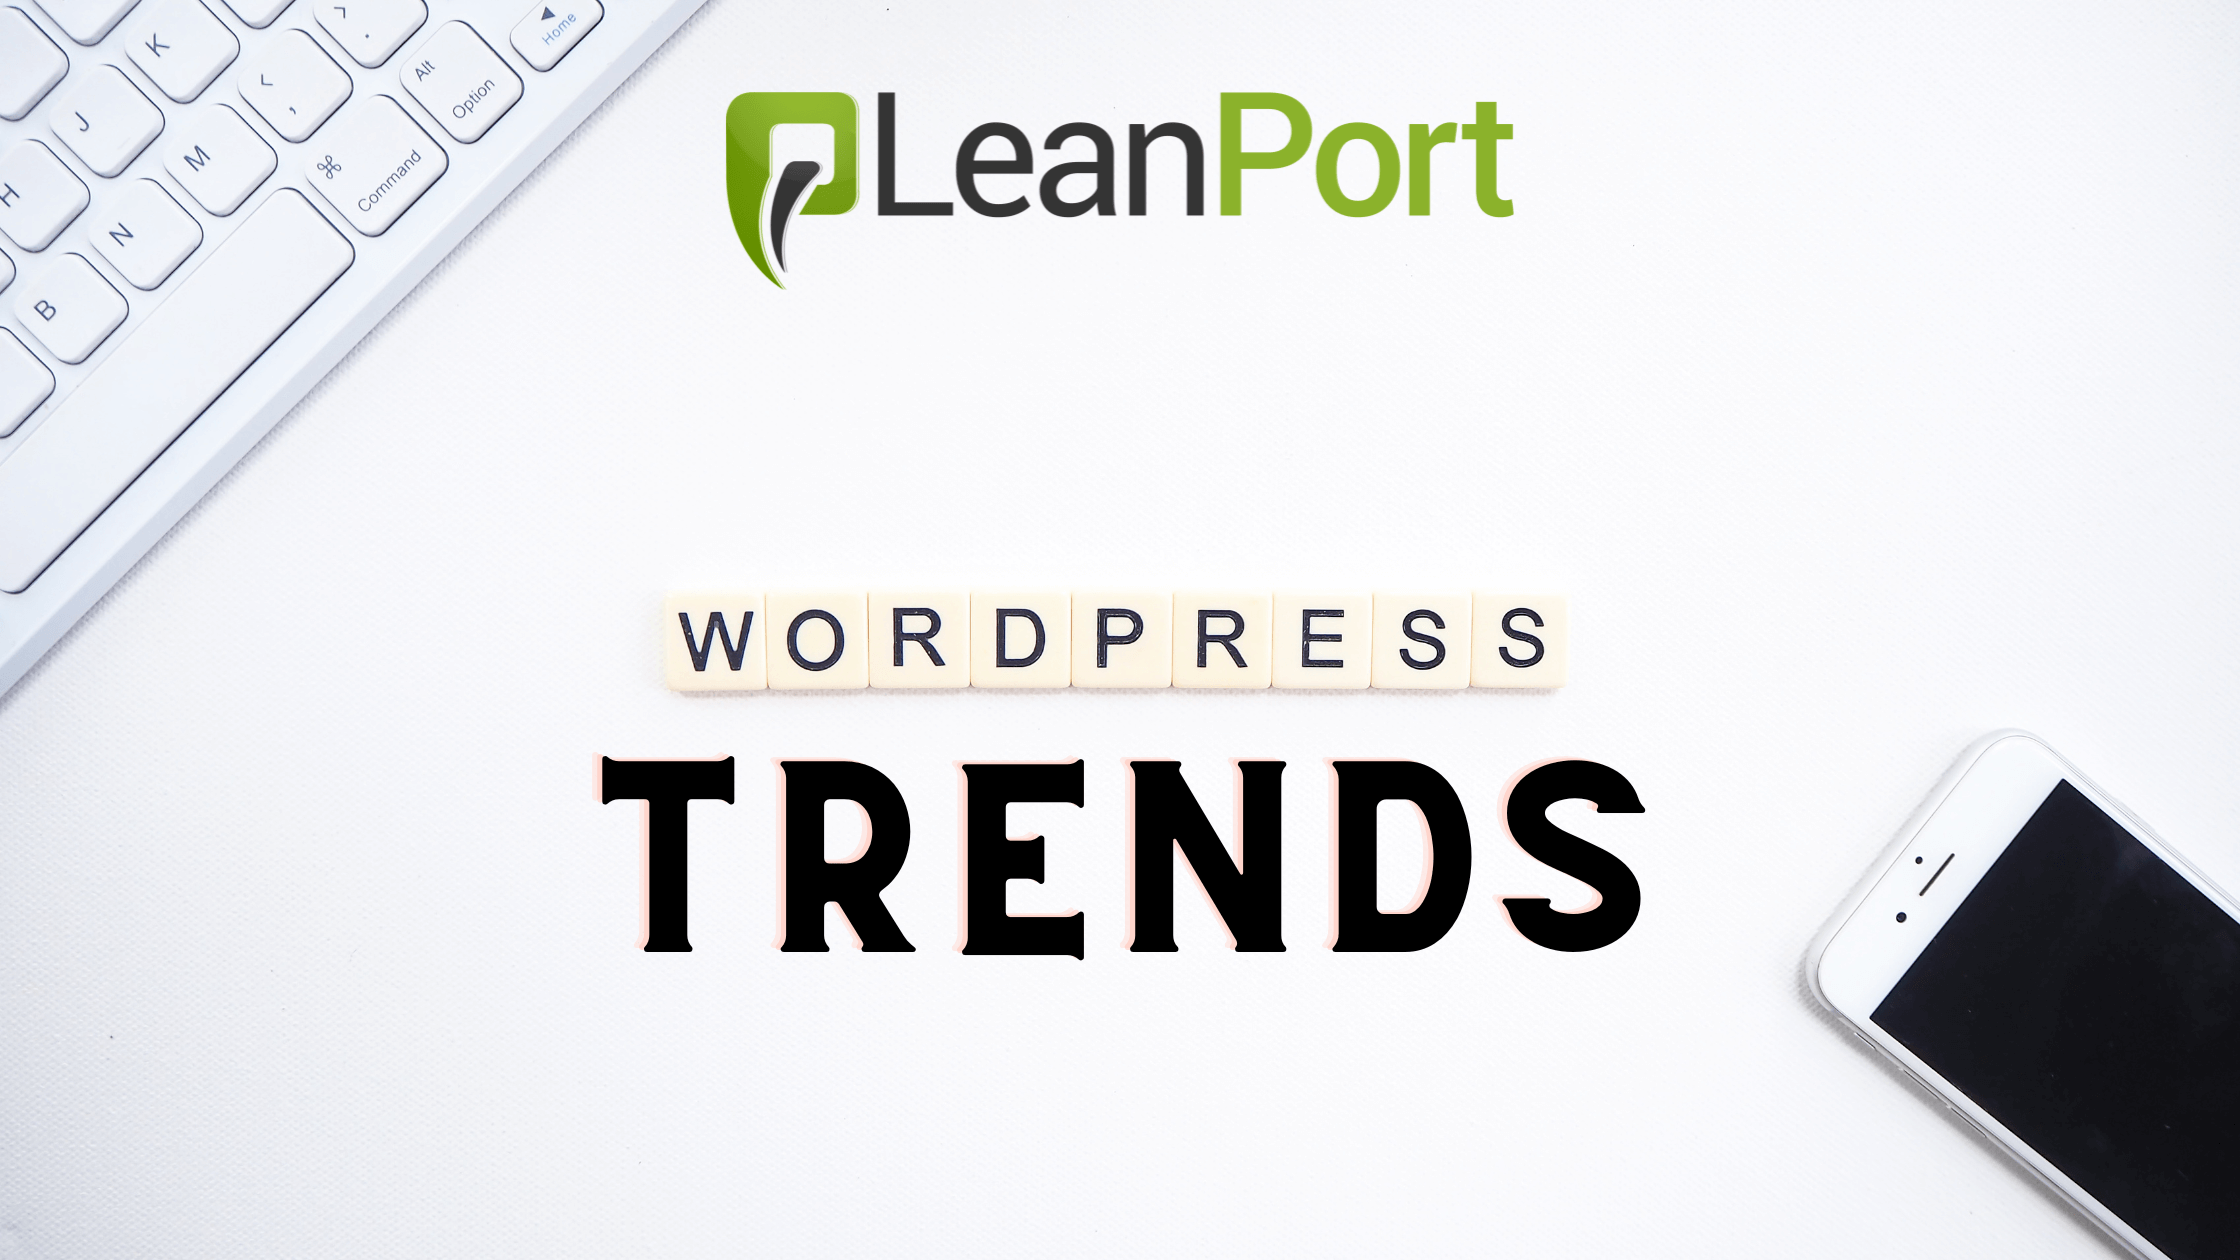 Wordpress Trends